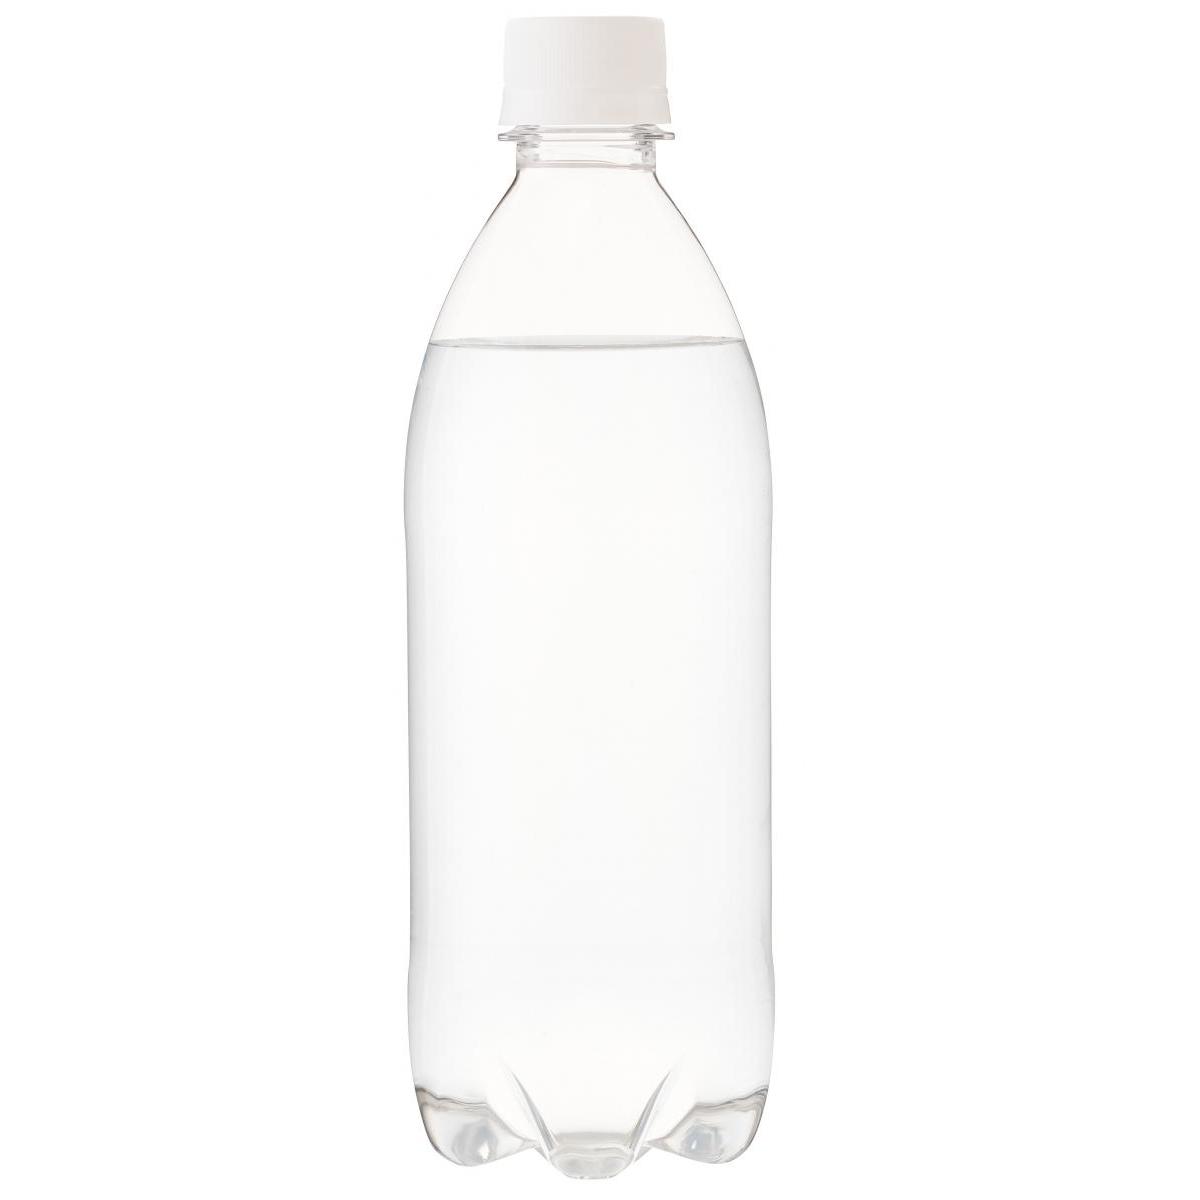 アイリスオーヤマ 富士山の強炭酸水 ラベルレス 500ml × 24本 ペットボトルの商品画像